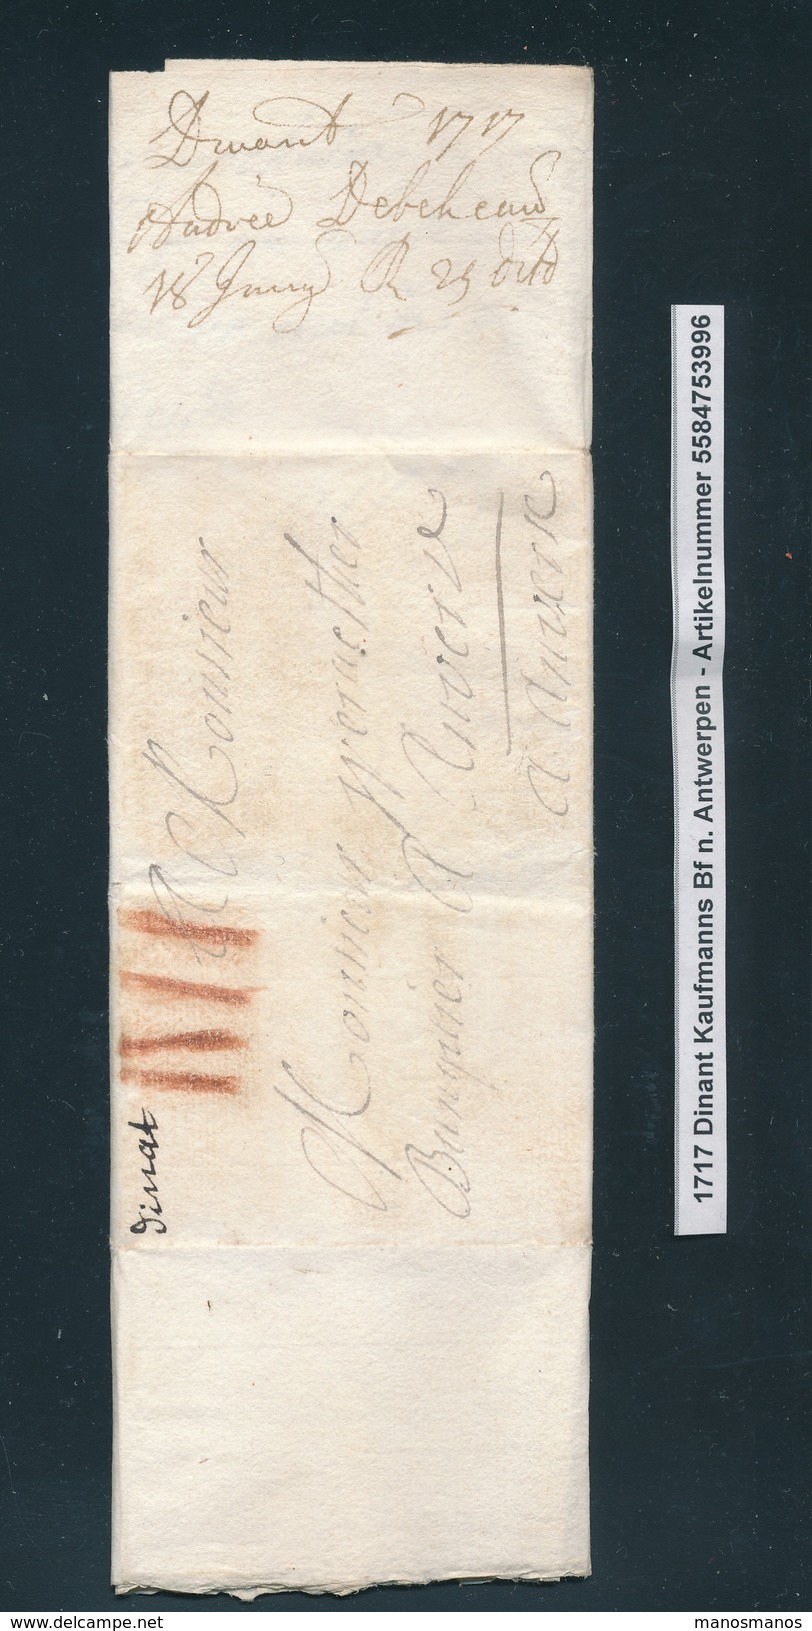 778/25 - Lettre Précurseur De DINANT(manuscrit Dinat) 1716 Vers Anvers - Port à La Craie IIII - Signée Debehaud - 1714-1794 (Paises Bajos Austriacos)